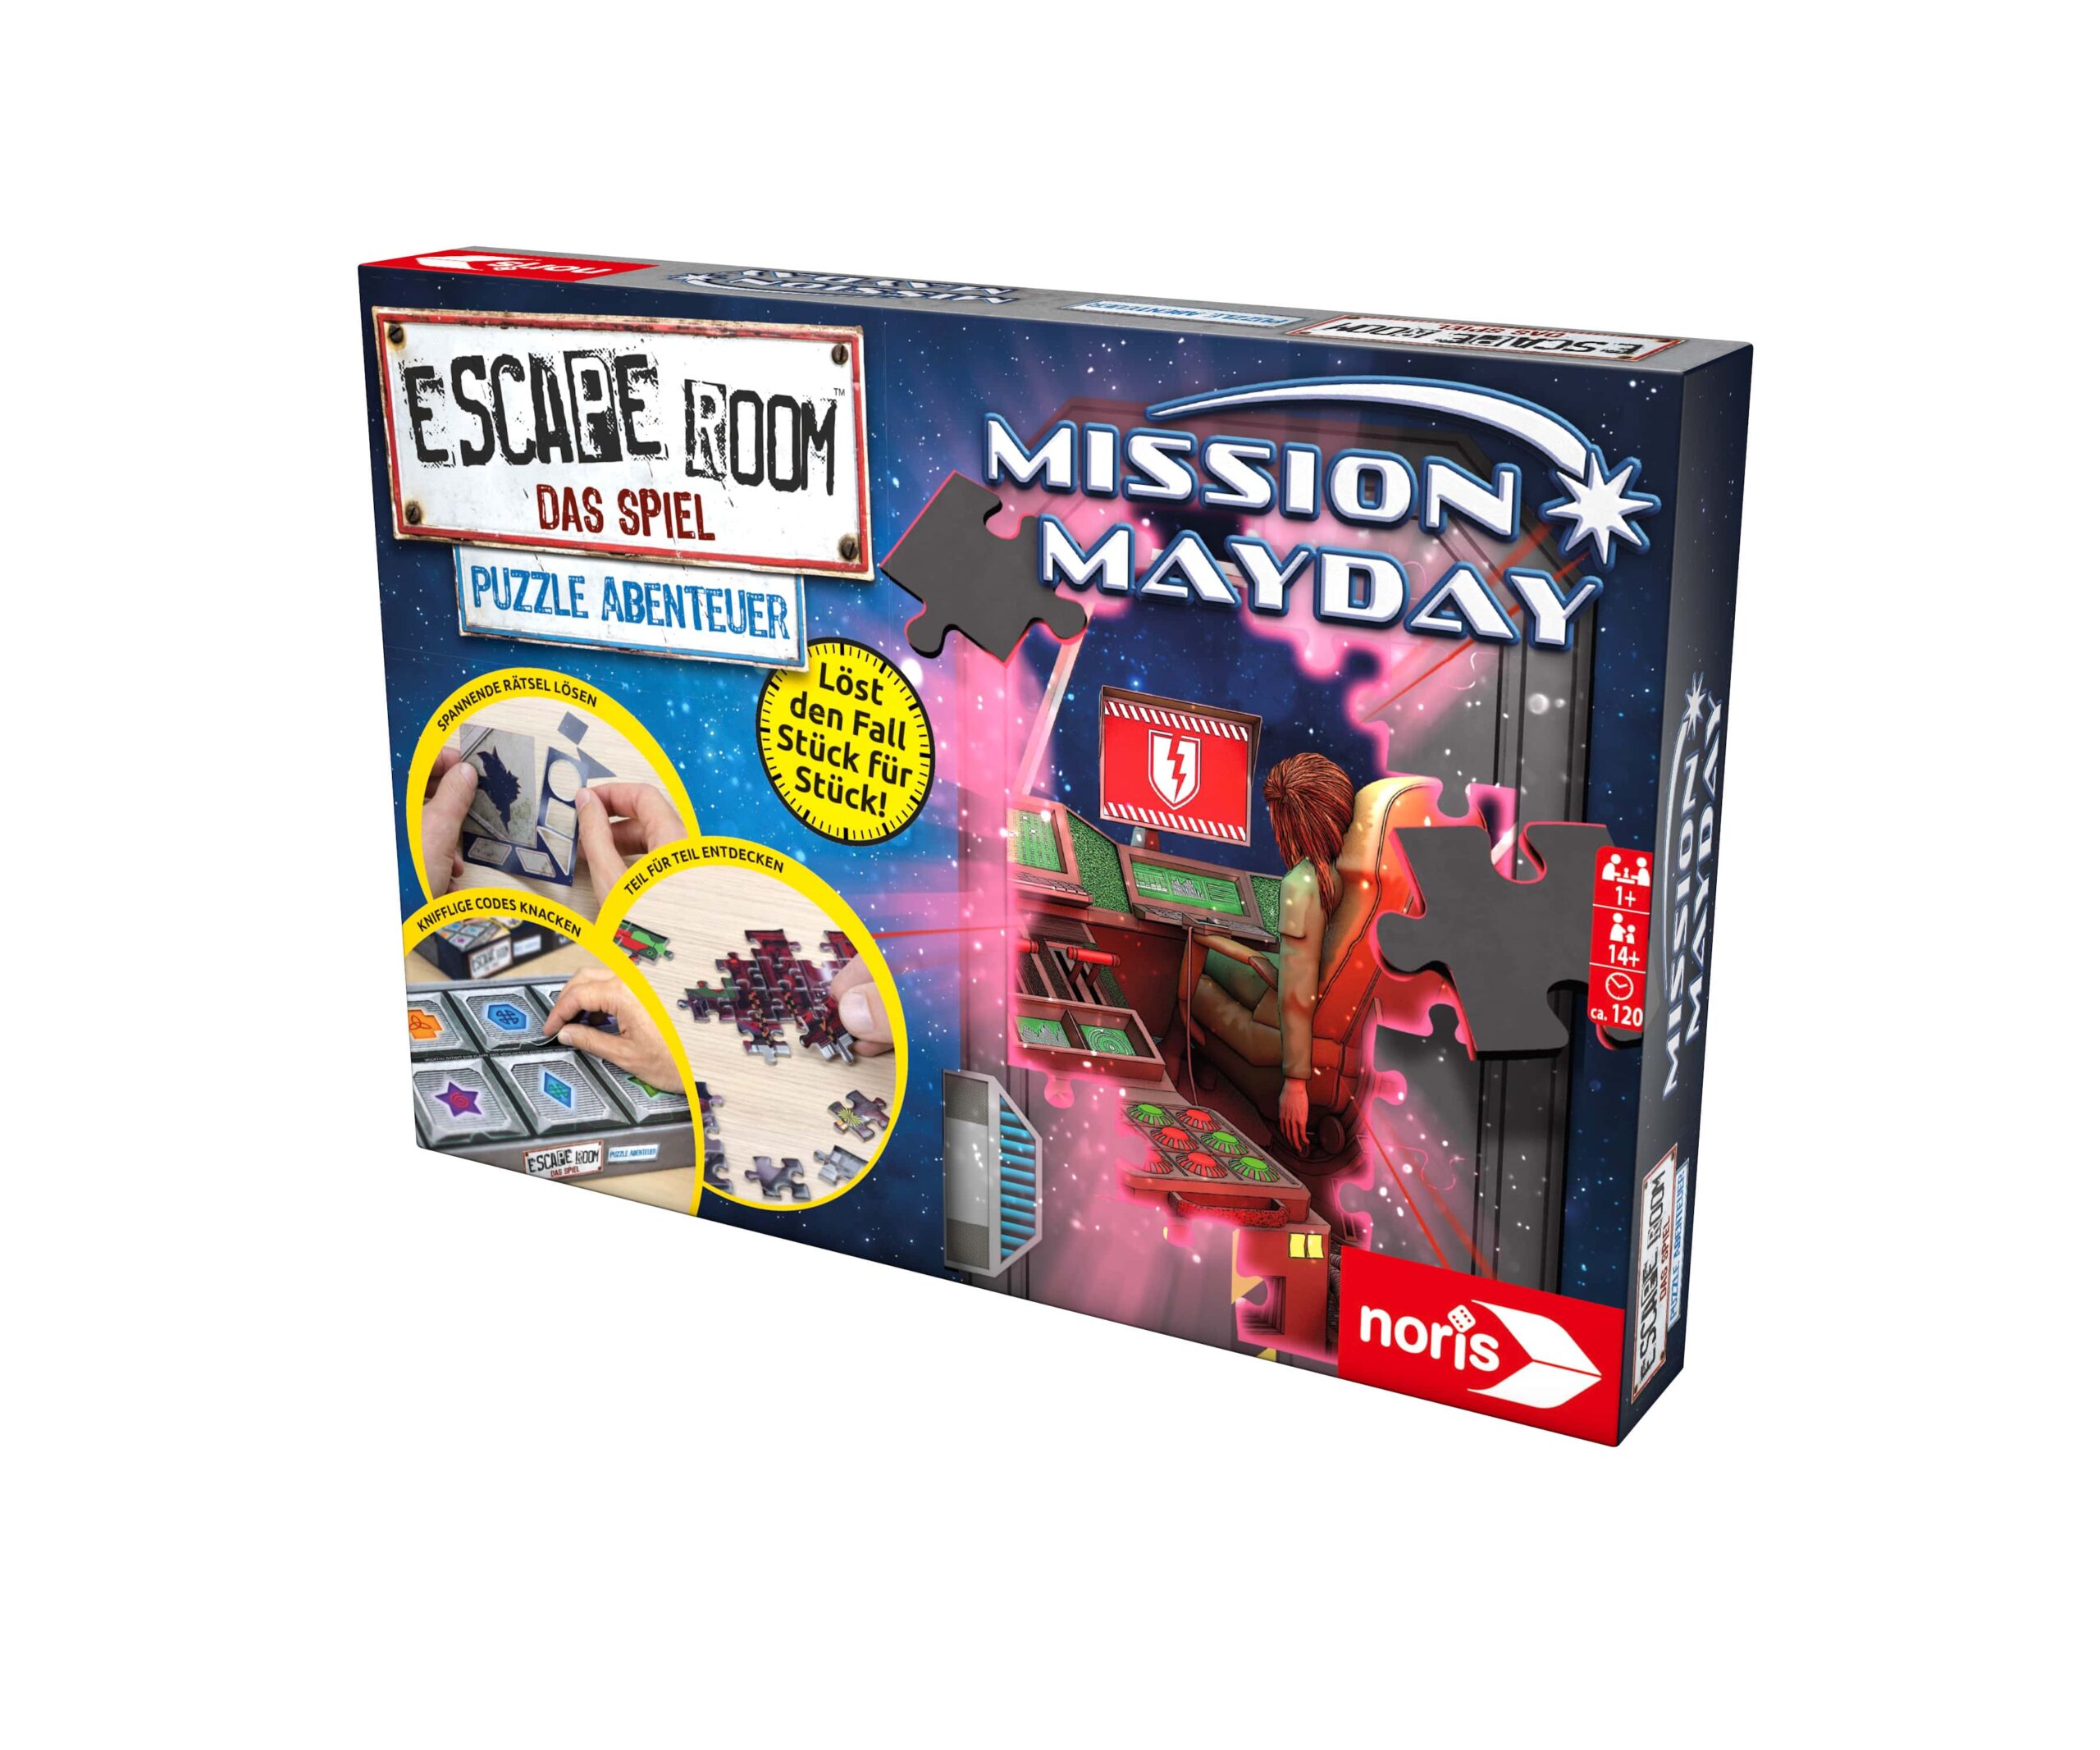 Noris Spiele Escape Room: Mission Mayday Puzzle Abenteuer 3